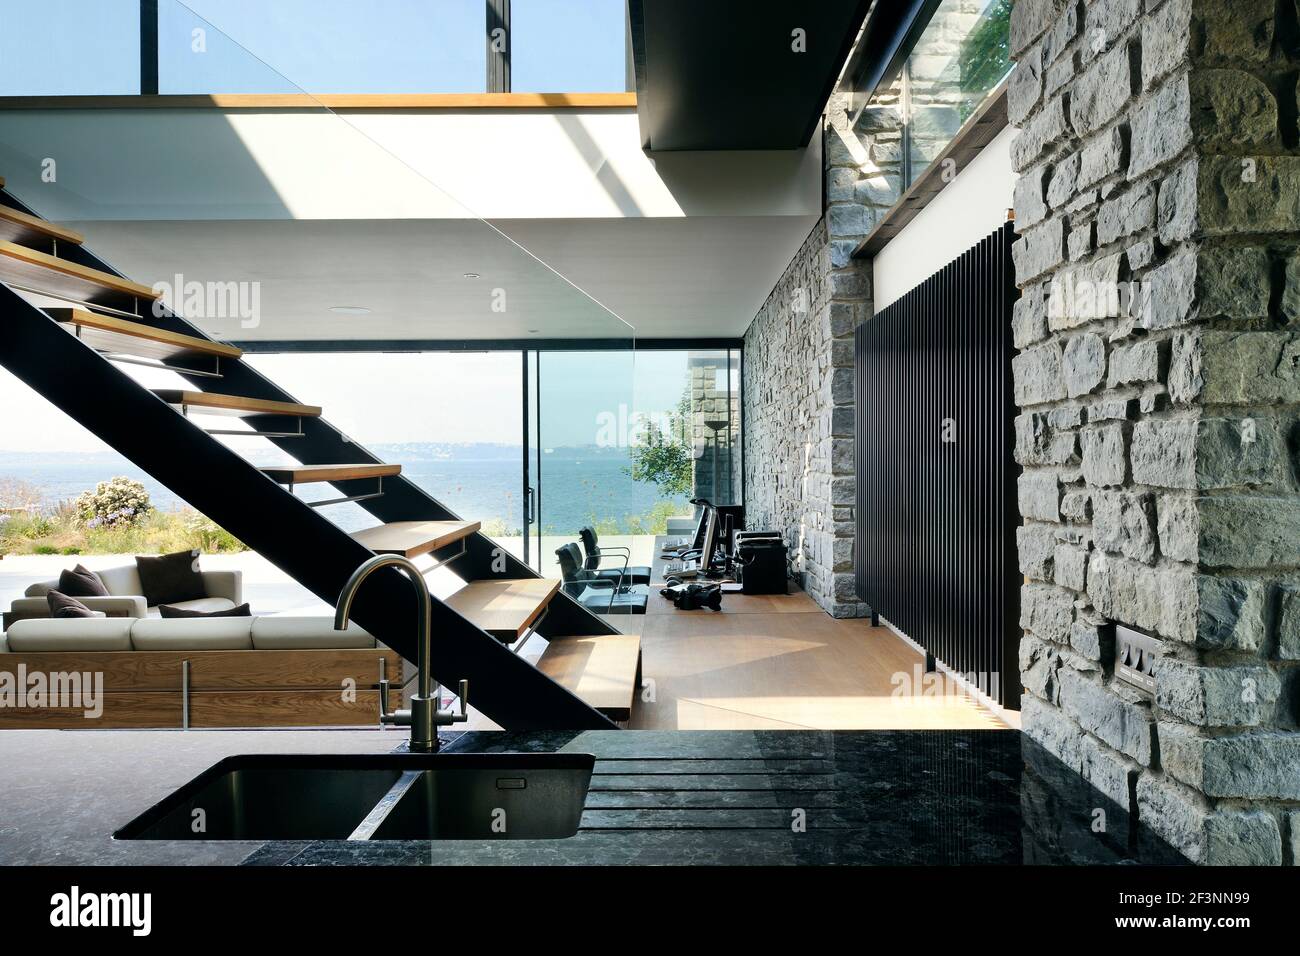 Los espacios interiores de una casa moderna en los acantilados con vistas  al mar. Grandes paneles y paredes de vidrio, y estantes de madera y  divisores de habitaciones. Flotando Fotografía de stock -